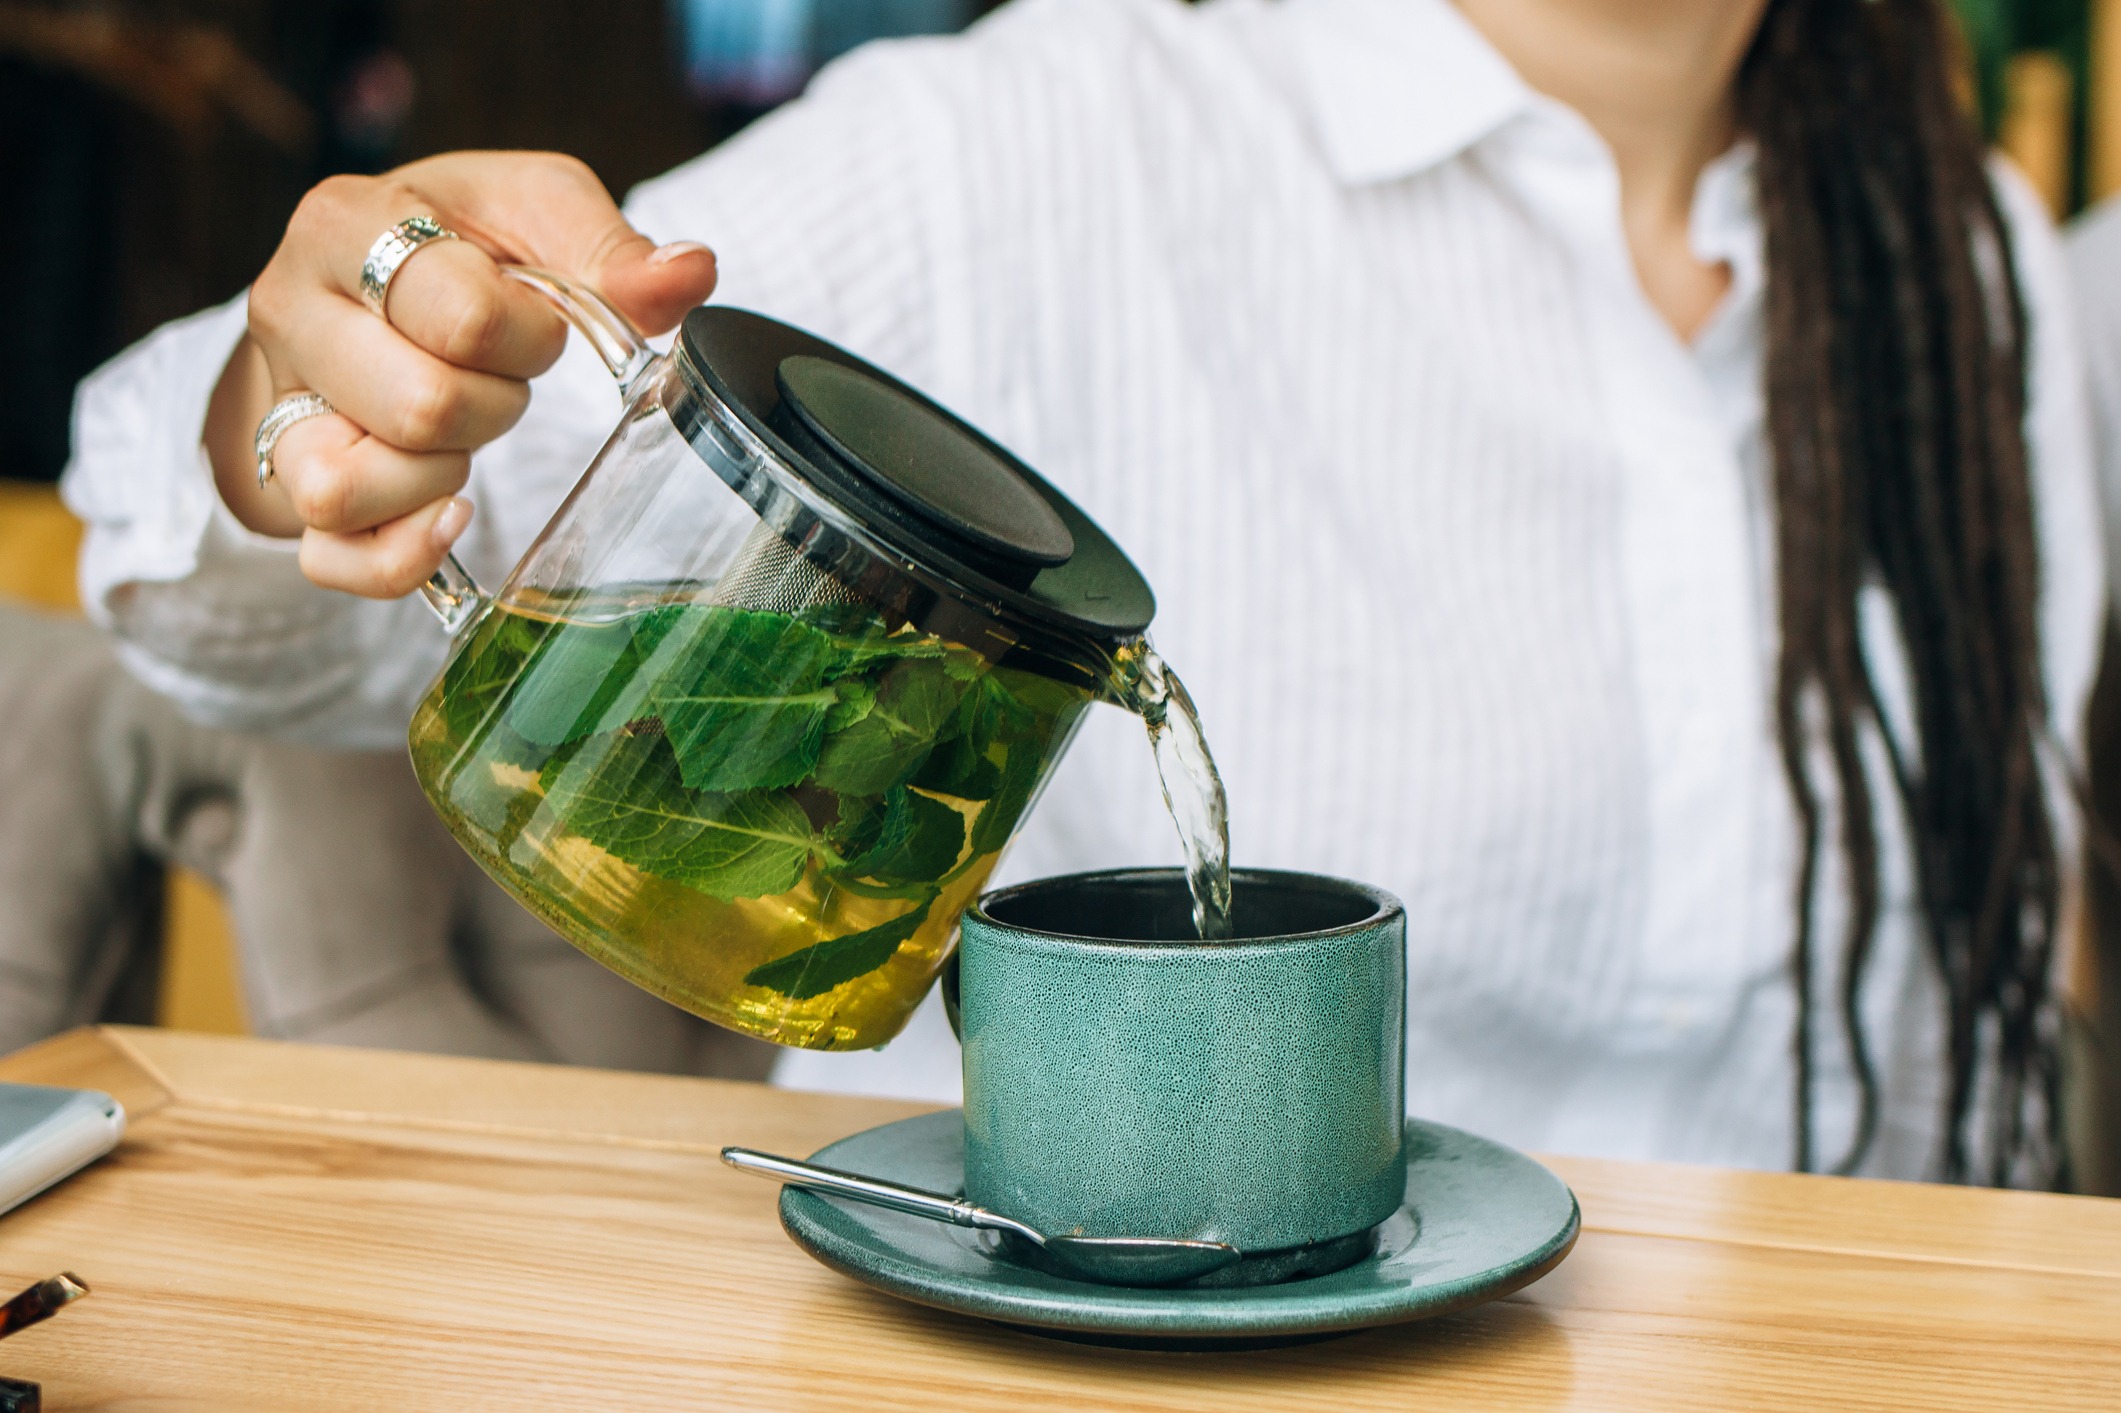 Poudre de thé vert Matcha biologique Poudre de Matcha japonaise authentique  Poudre de thé Matcha non sucrée du Japon minceur